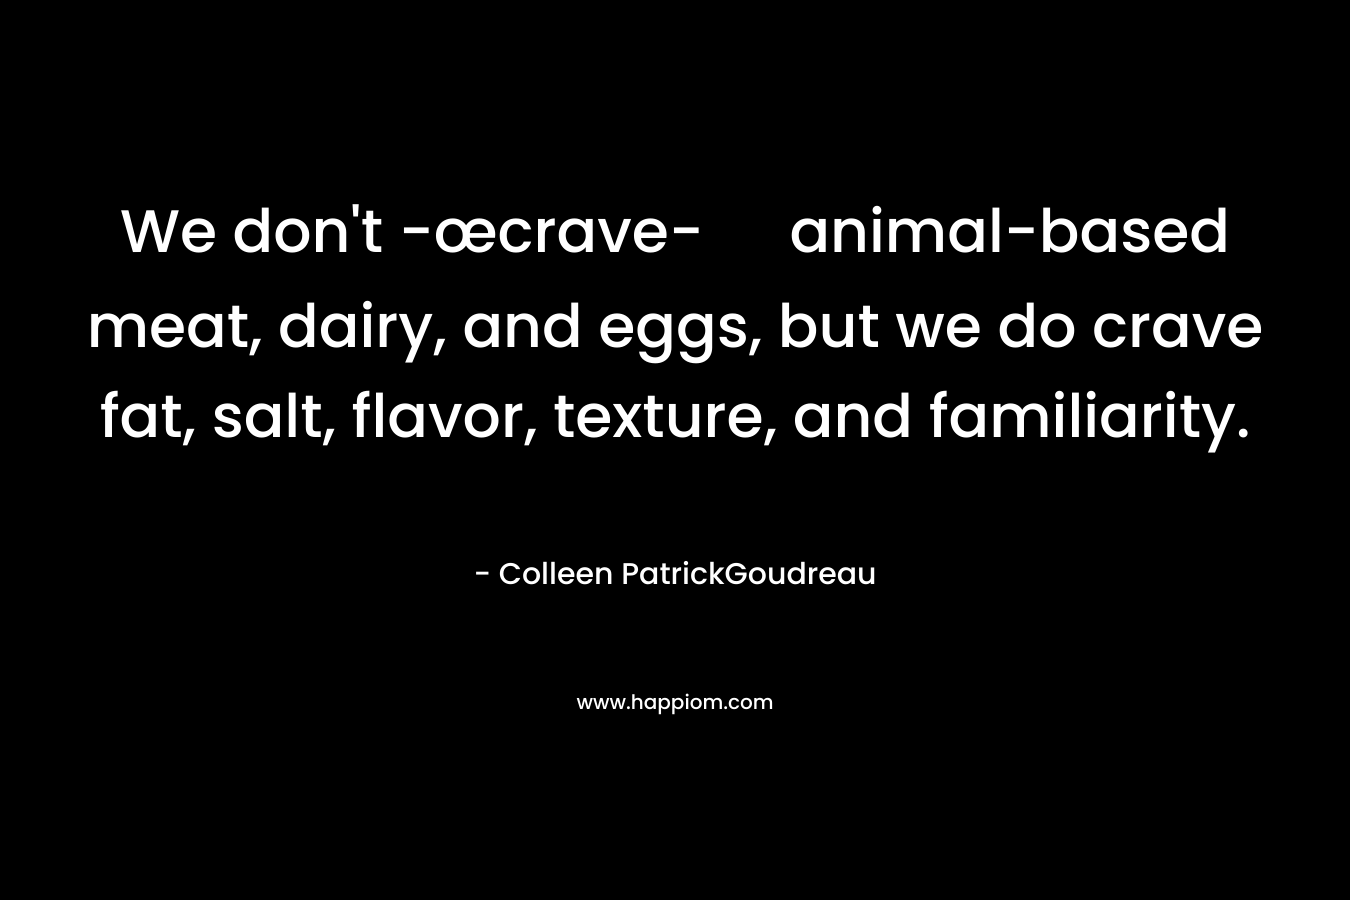 We don't -œcrave- animal-based meat, dairy, and eggs, but we do crave fat, salt, flavor, texture, and familiarity.